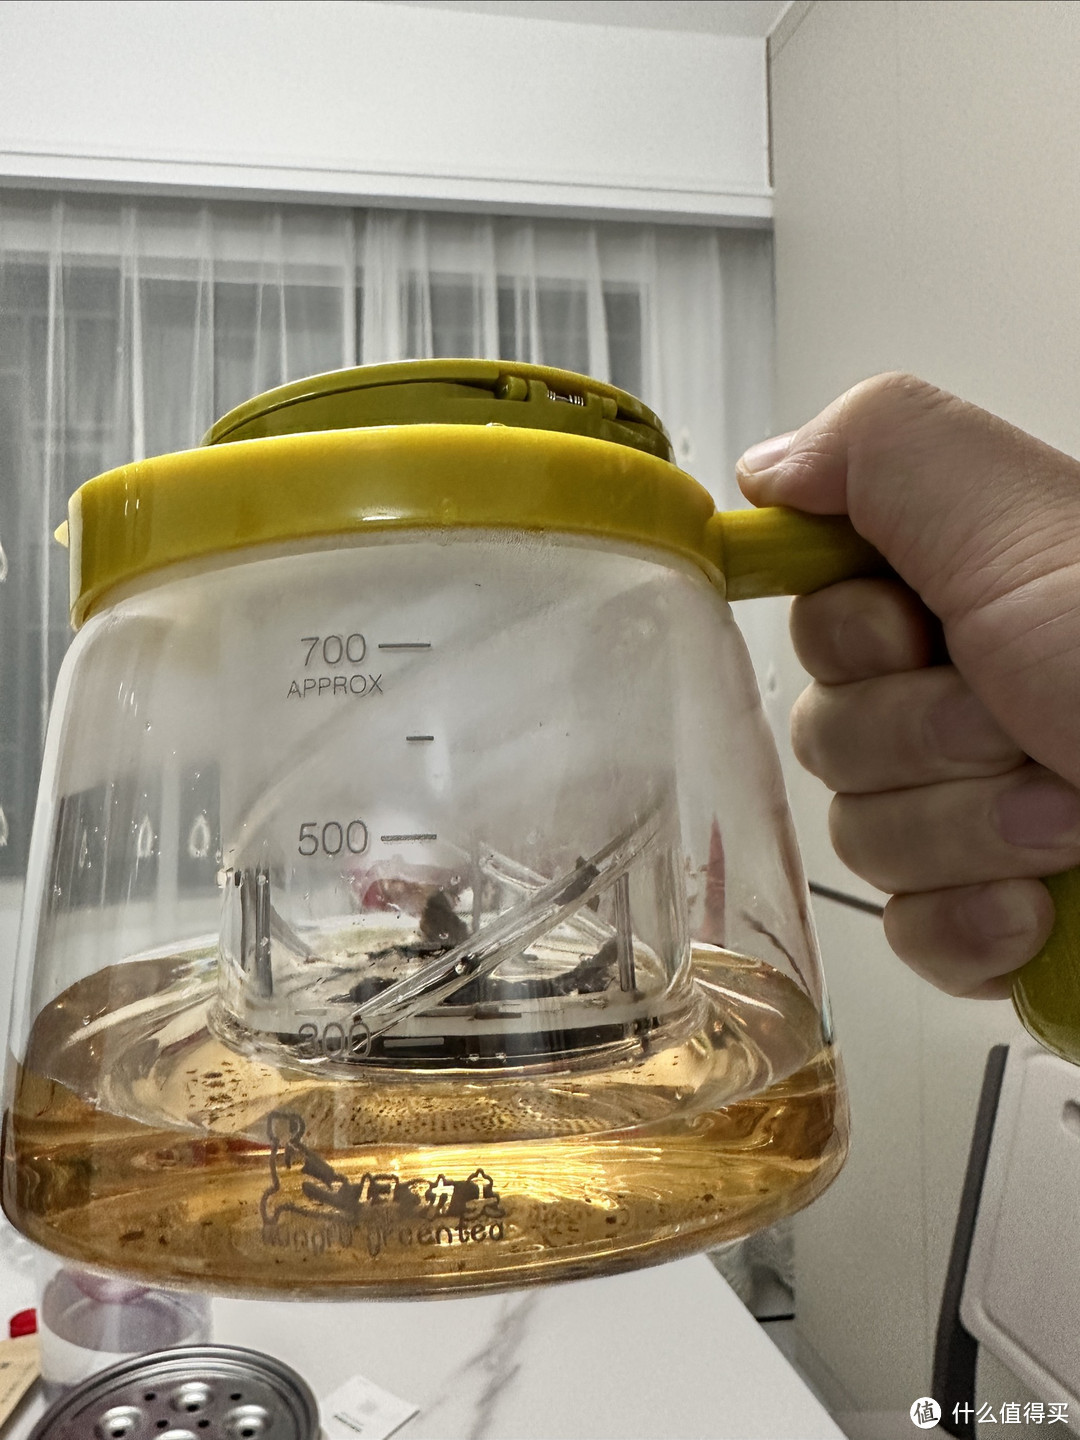 耐高温玻璃+茶汤分离+旋转调节+700ml=完美茶壶